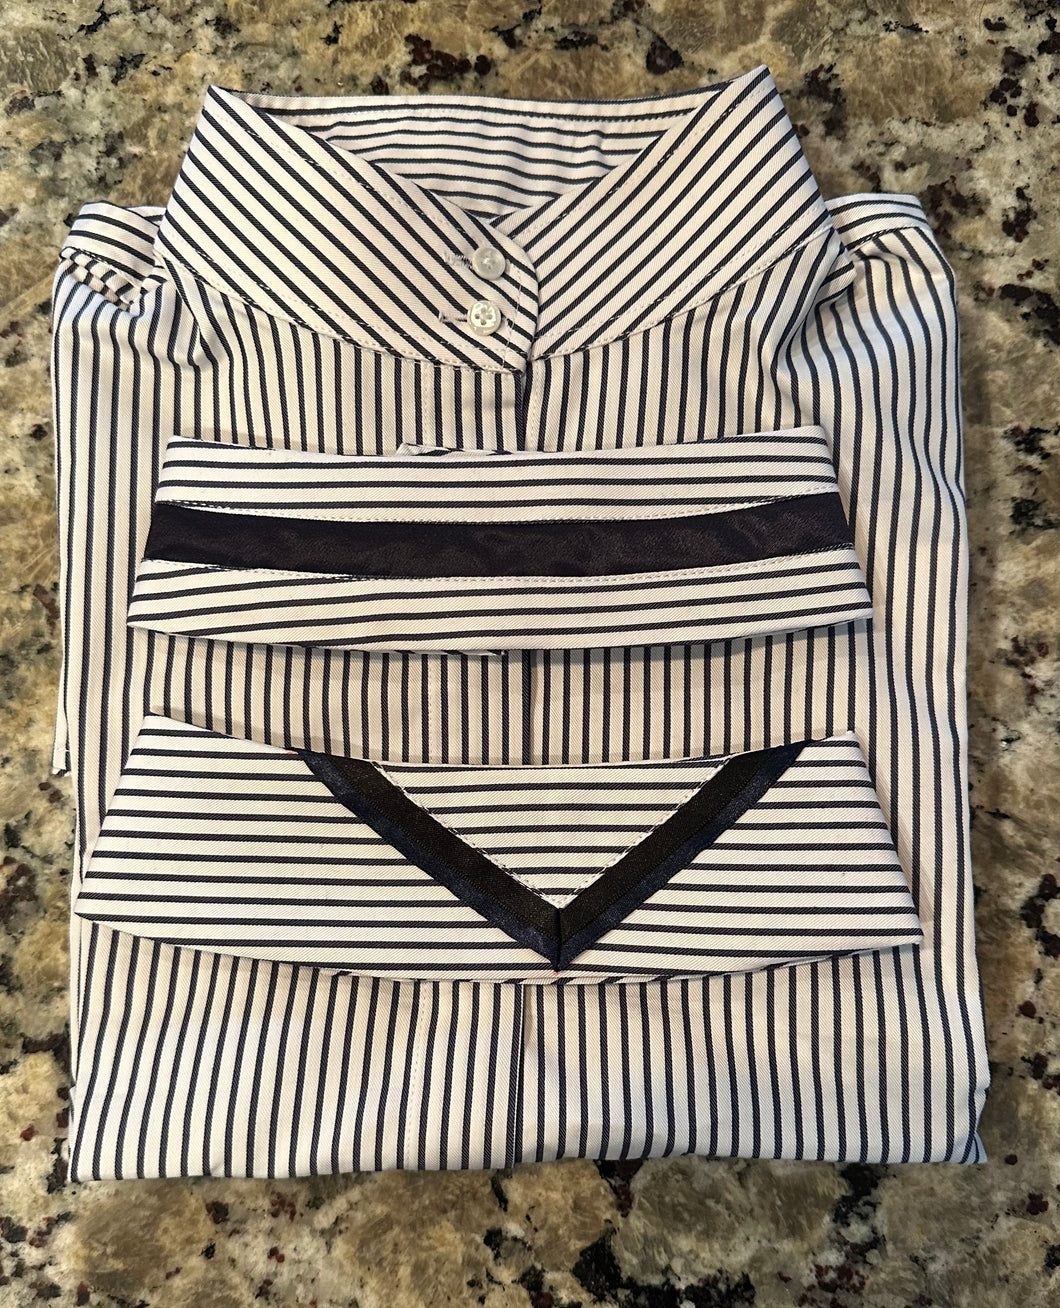 White & Navy Stripe: Thick Navy Stripe & Navy/Black V Collars - Size 36